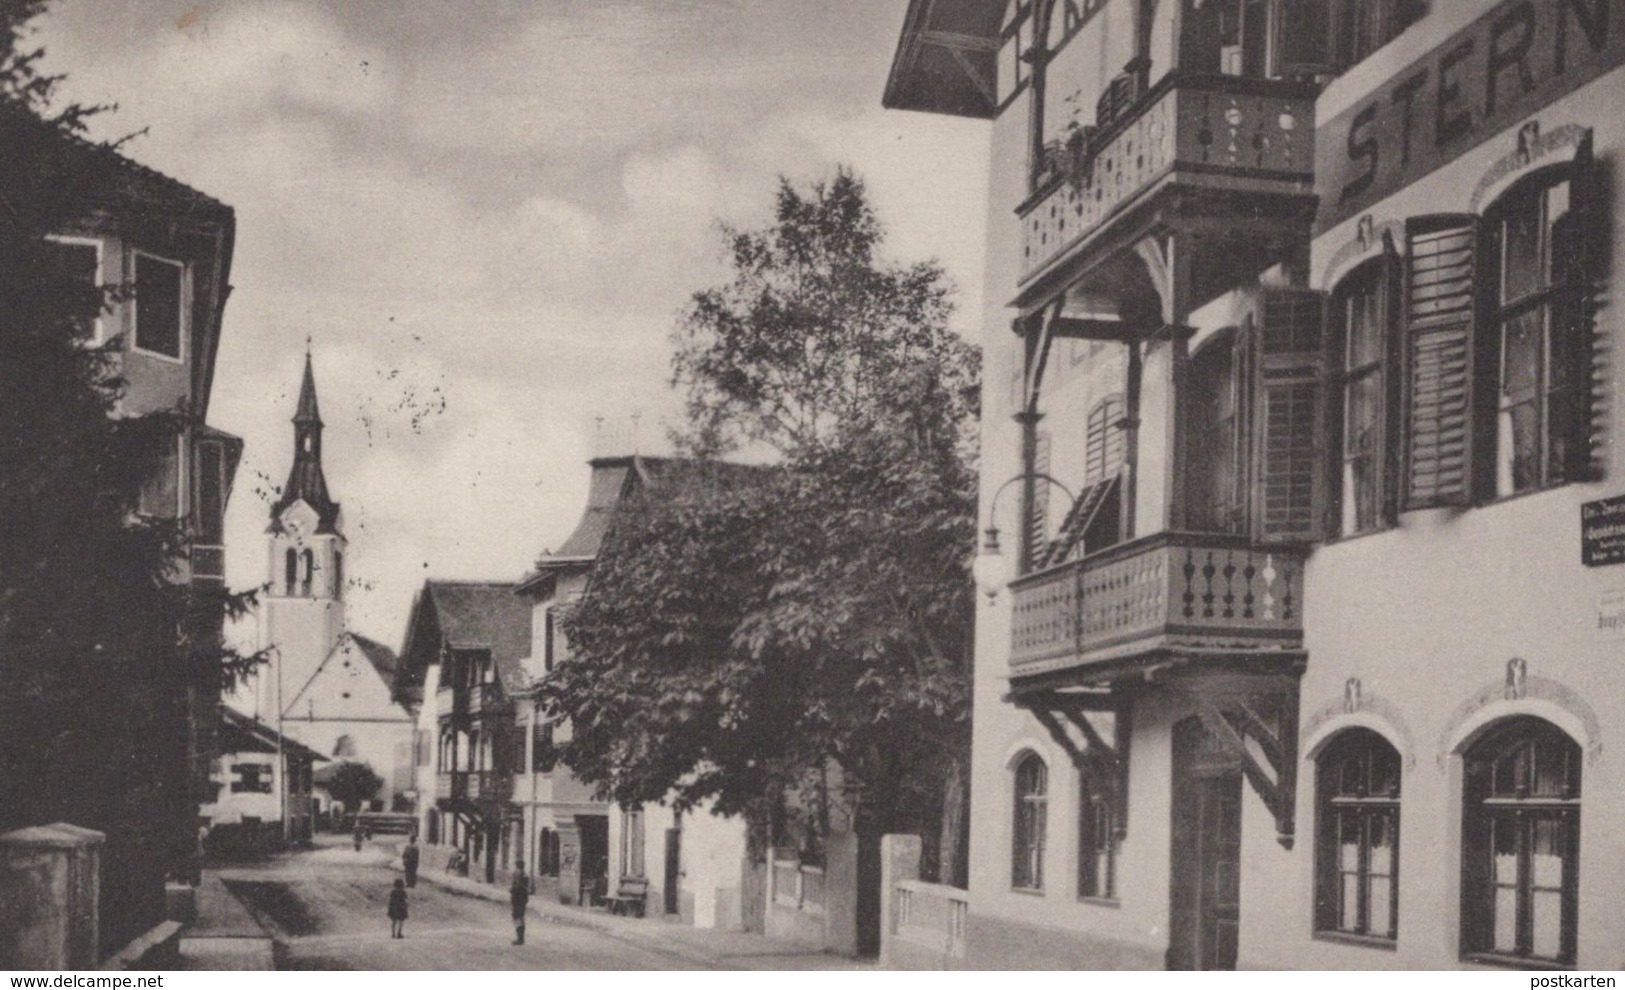 ALTE POSTKARTE IGLS HOTEL STERN TIROL ÖSTERREICH 1927 Cpa Ansichtskarte Postcard AK - Igls